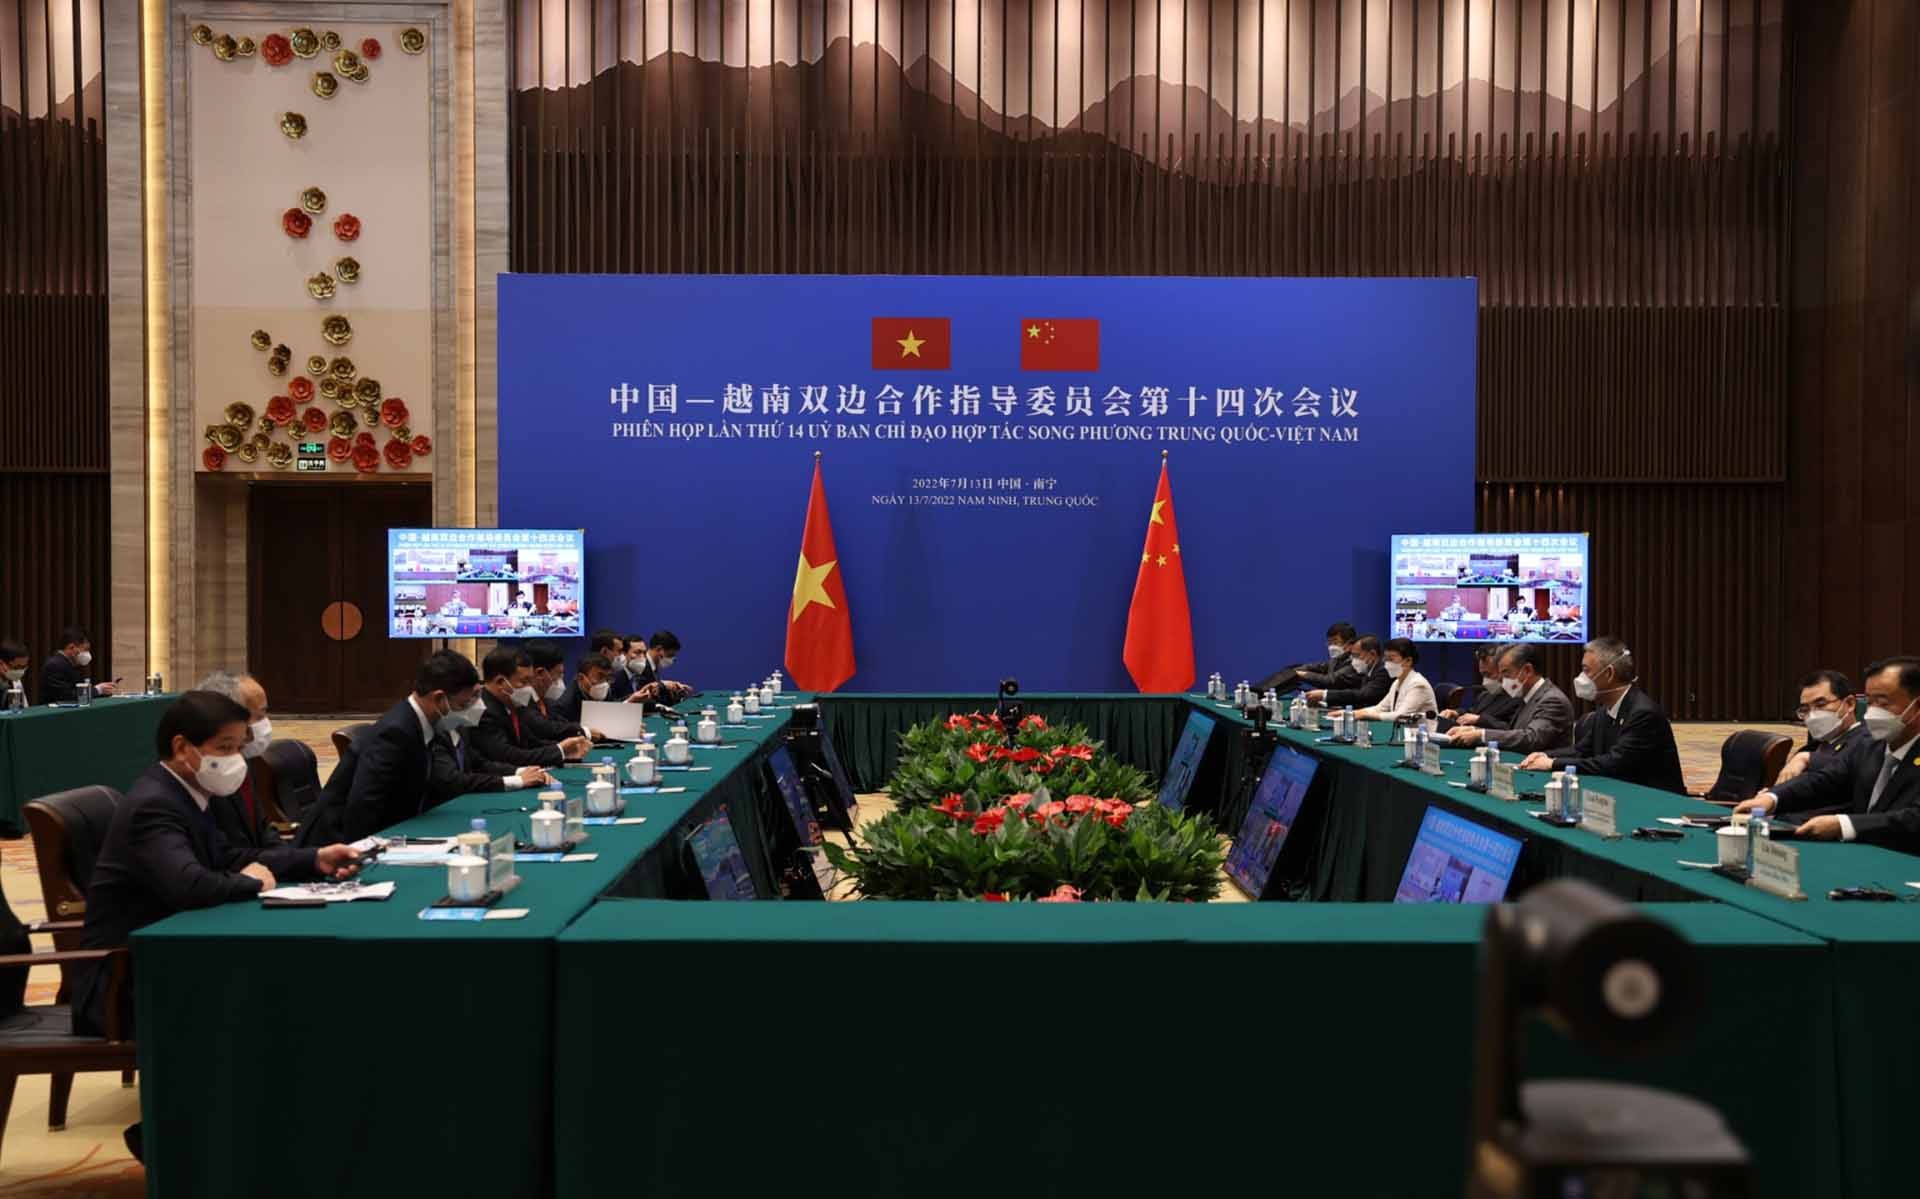 Phiên họp lần thứ 14 Ủy ban chỉ đạo hợp tác song phương Việt Nam-Trung Quốc